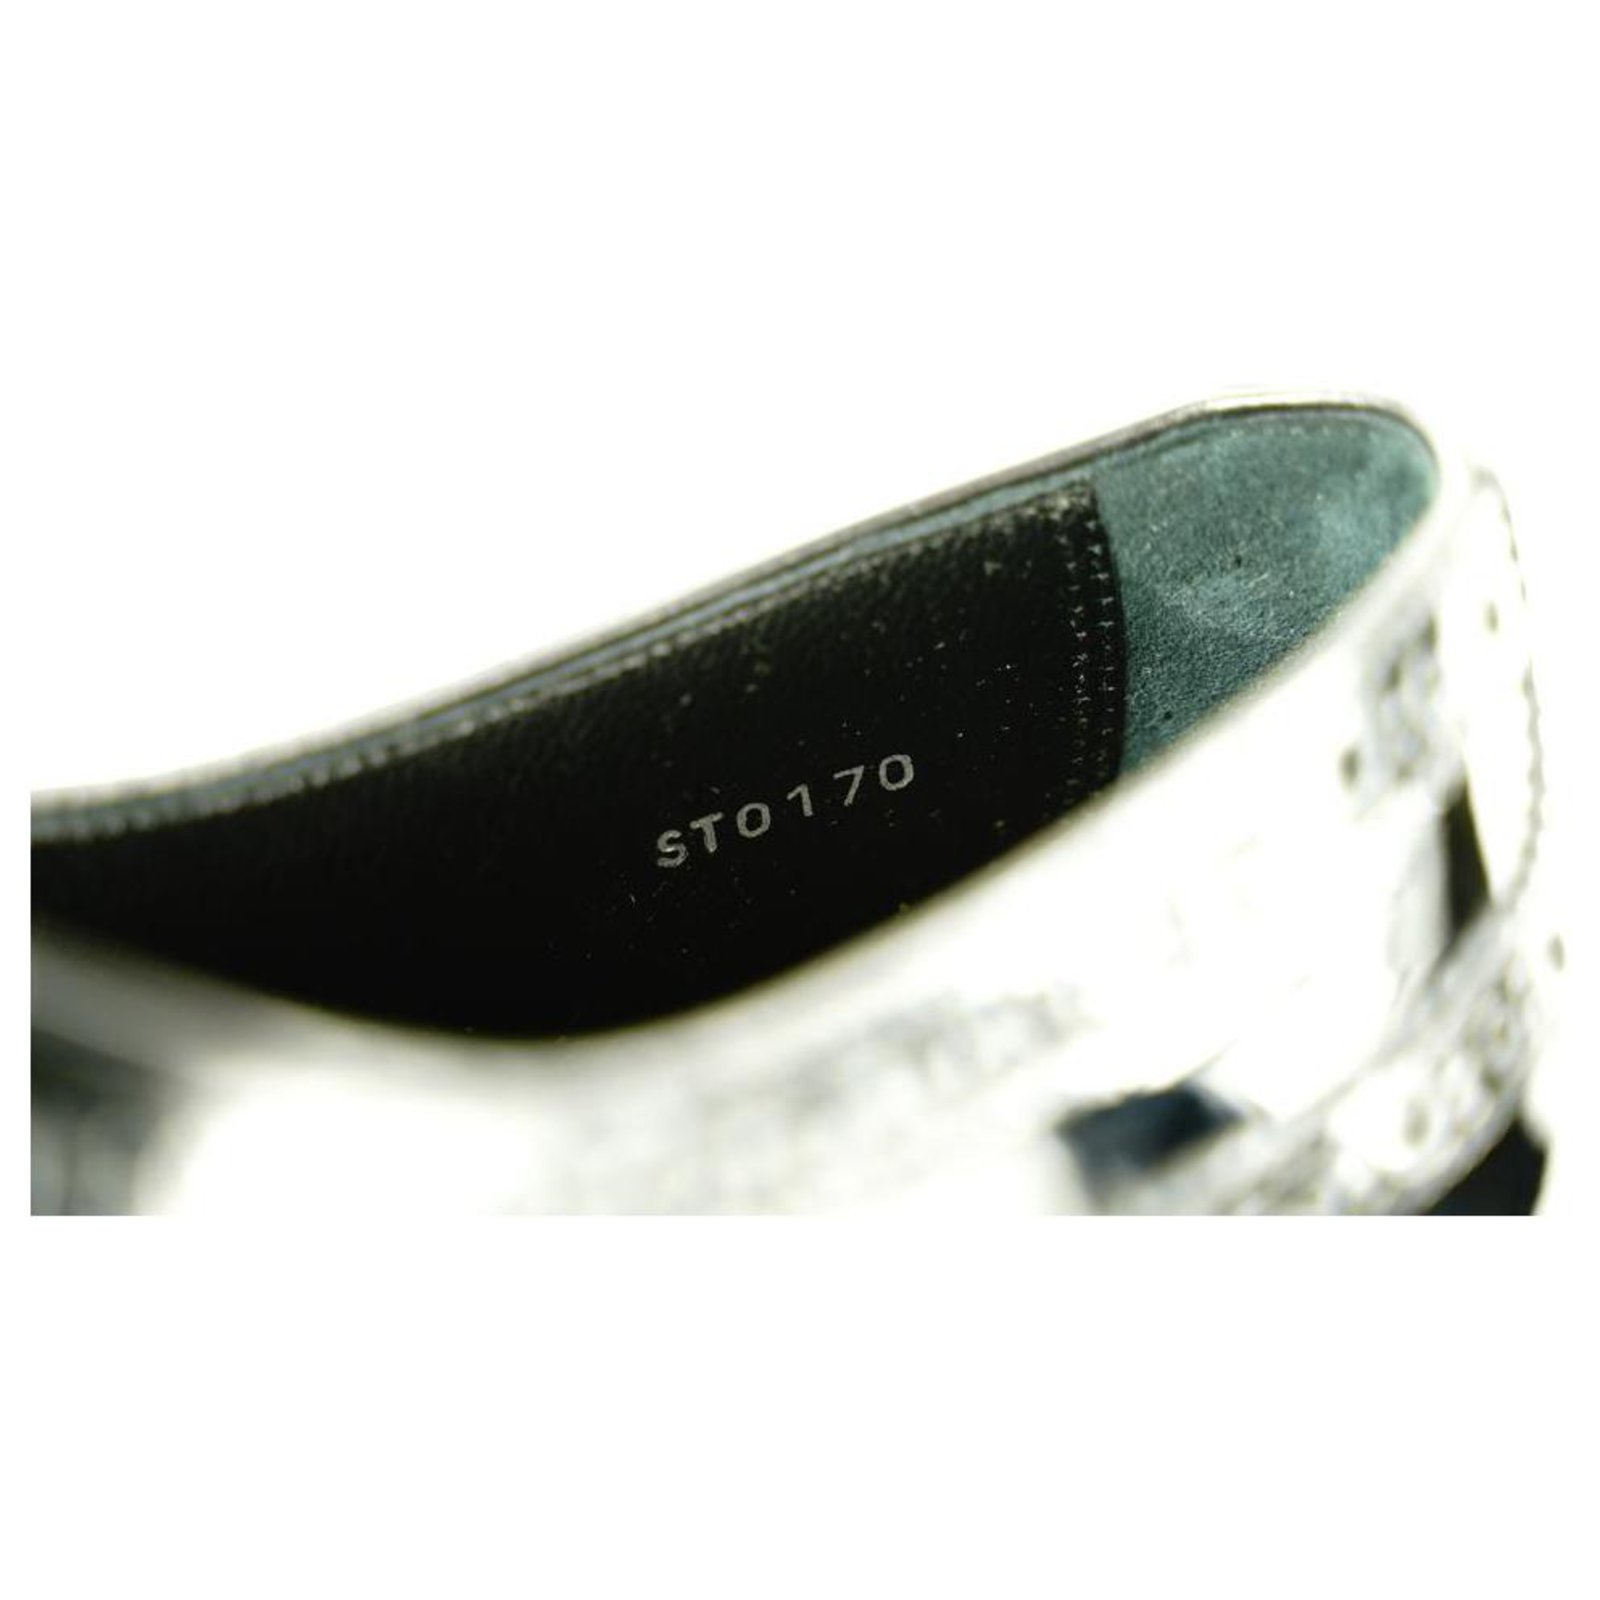 Louis Vuitton Scarpe eleganti da uomo con punta ad aletta Oxford